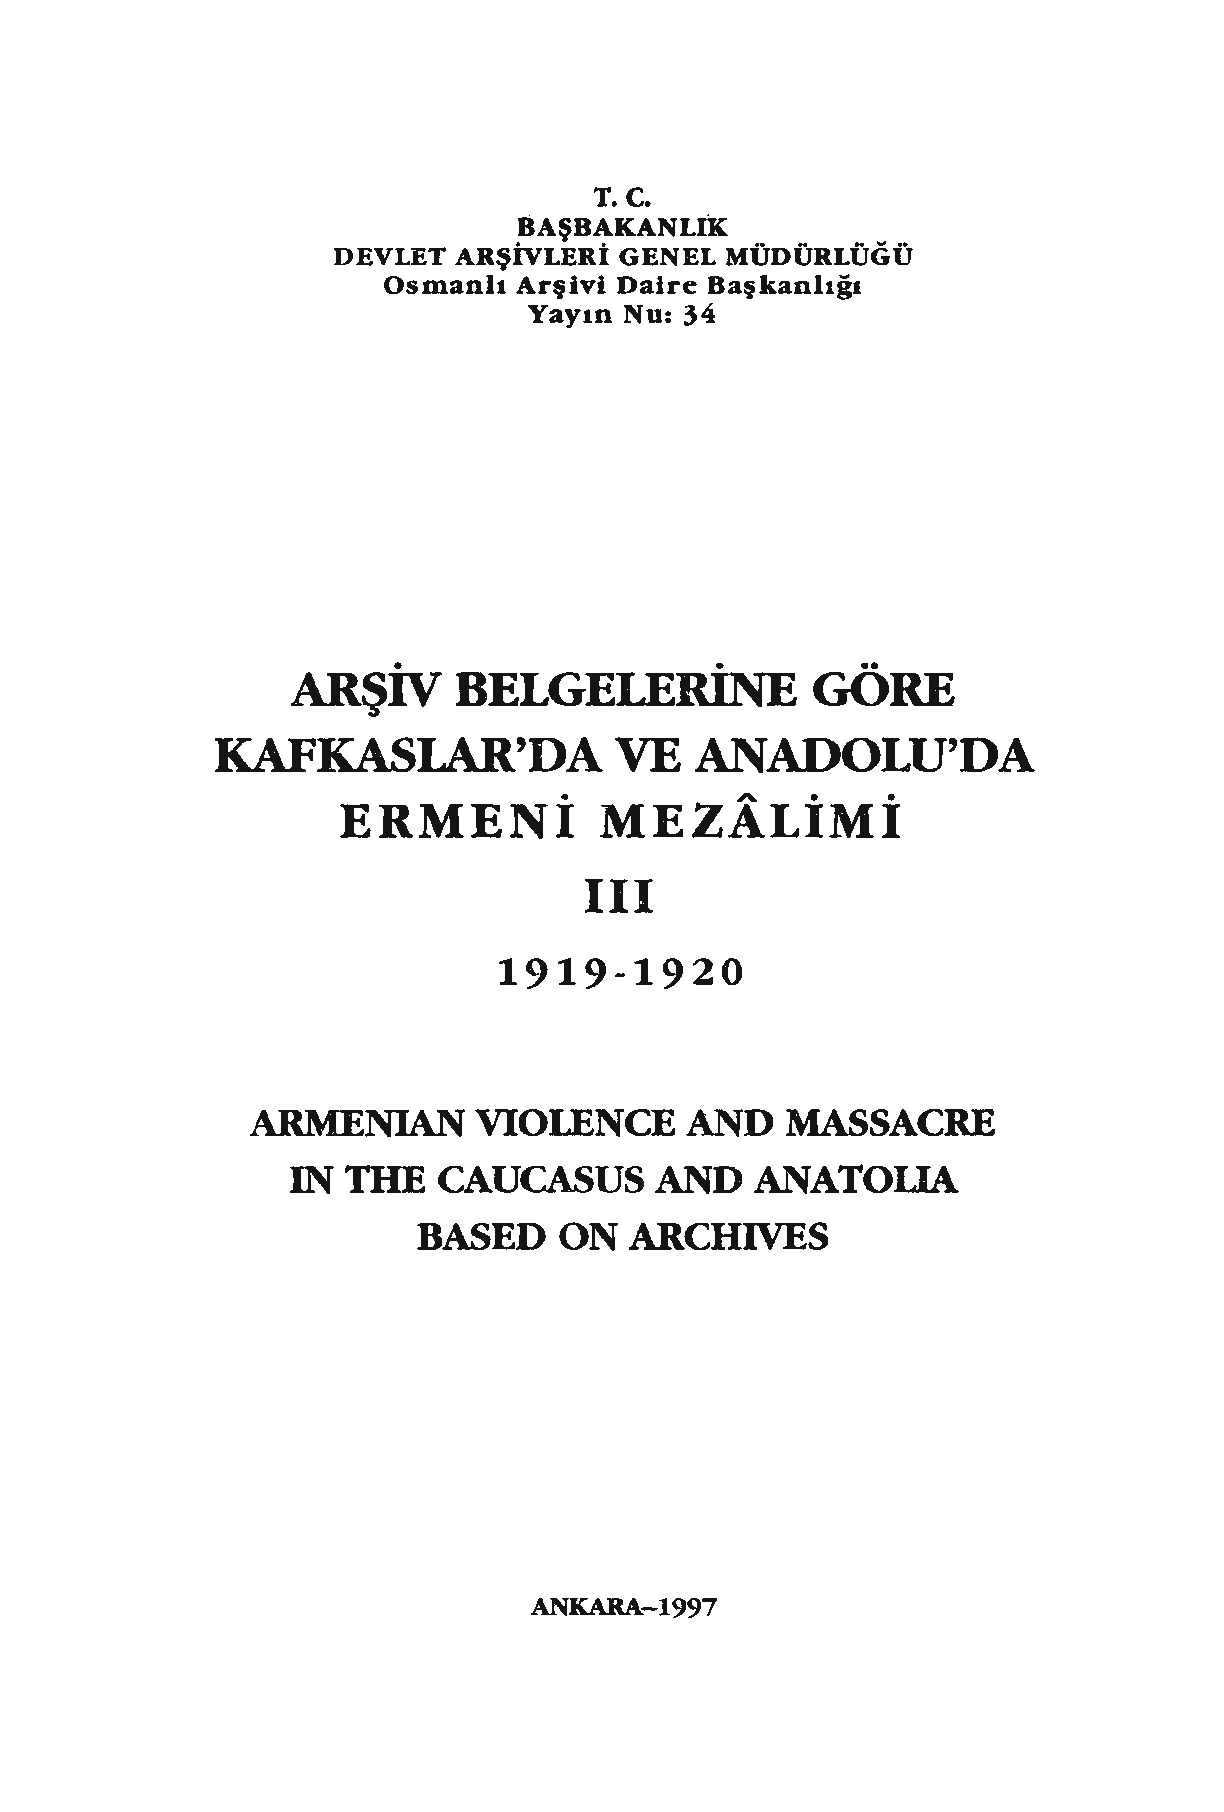 Arşiv Belgelerine Göre-3-qafqazlarda Ve Anadoluda Ermeni Mezalimi-1919-1920-T. C.Bashbakanlik-1997-351s